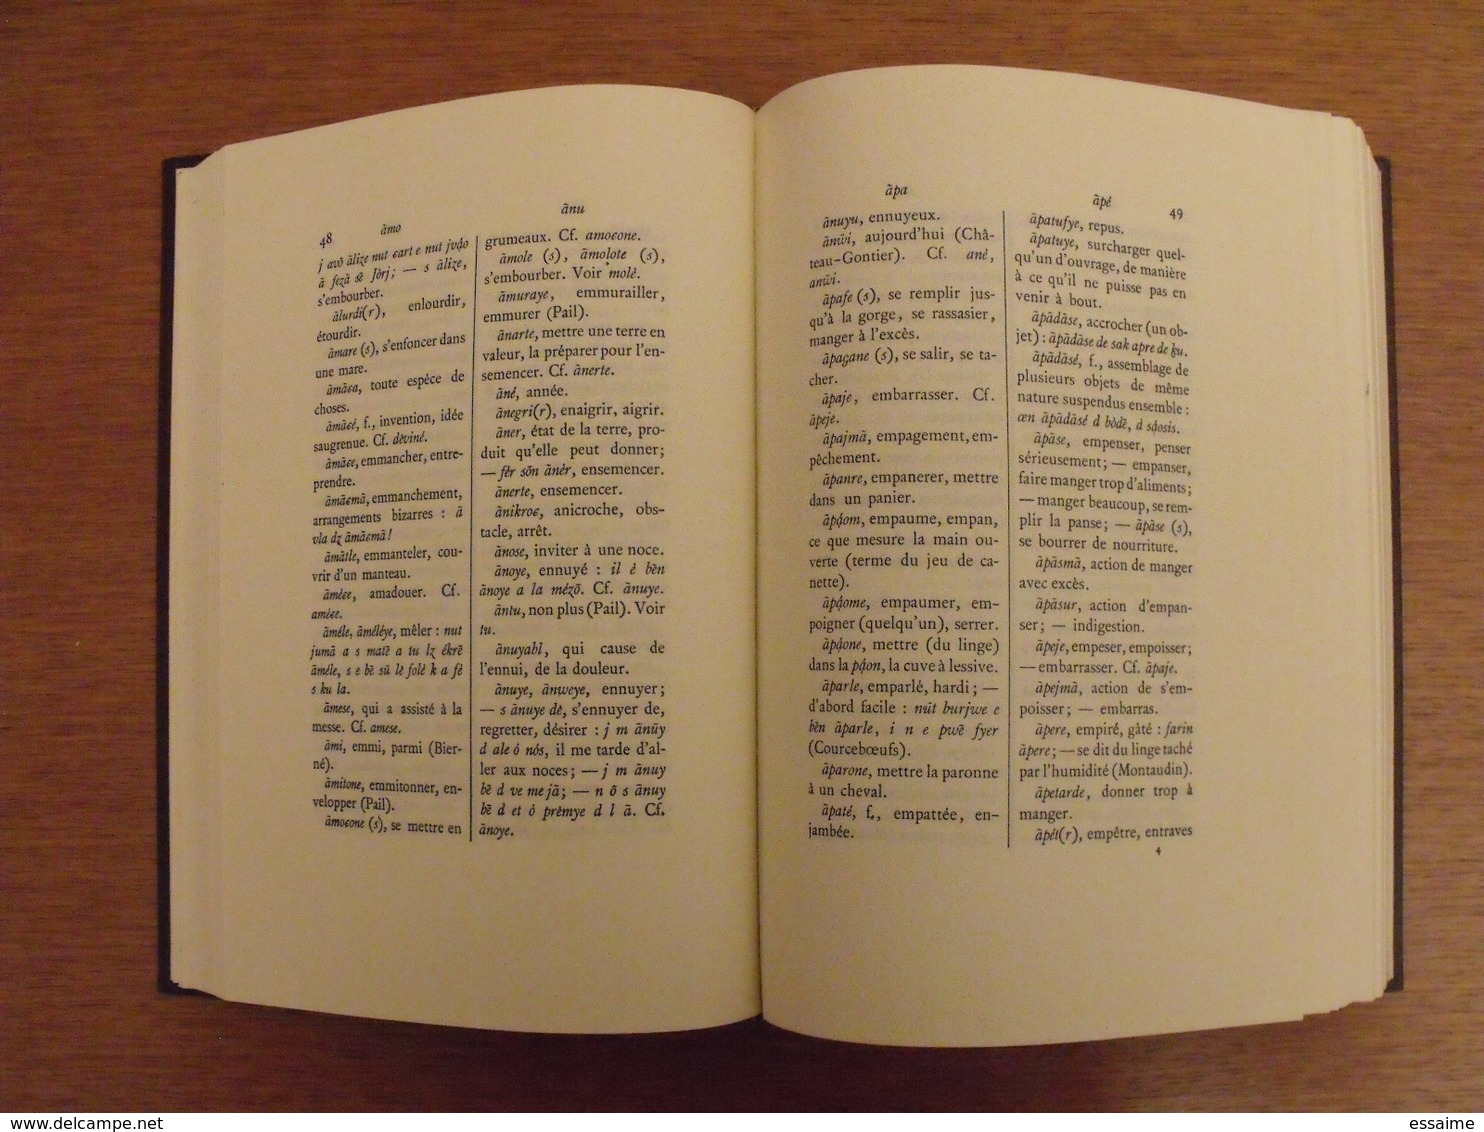 Glossaire Des Parlers Du Bas-maine (Mayenne). Georges Dottin. 1978 (300 Exemplaires) - Pays De Loire